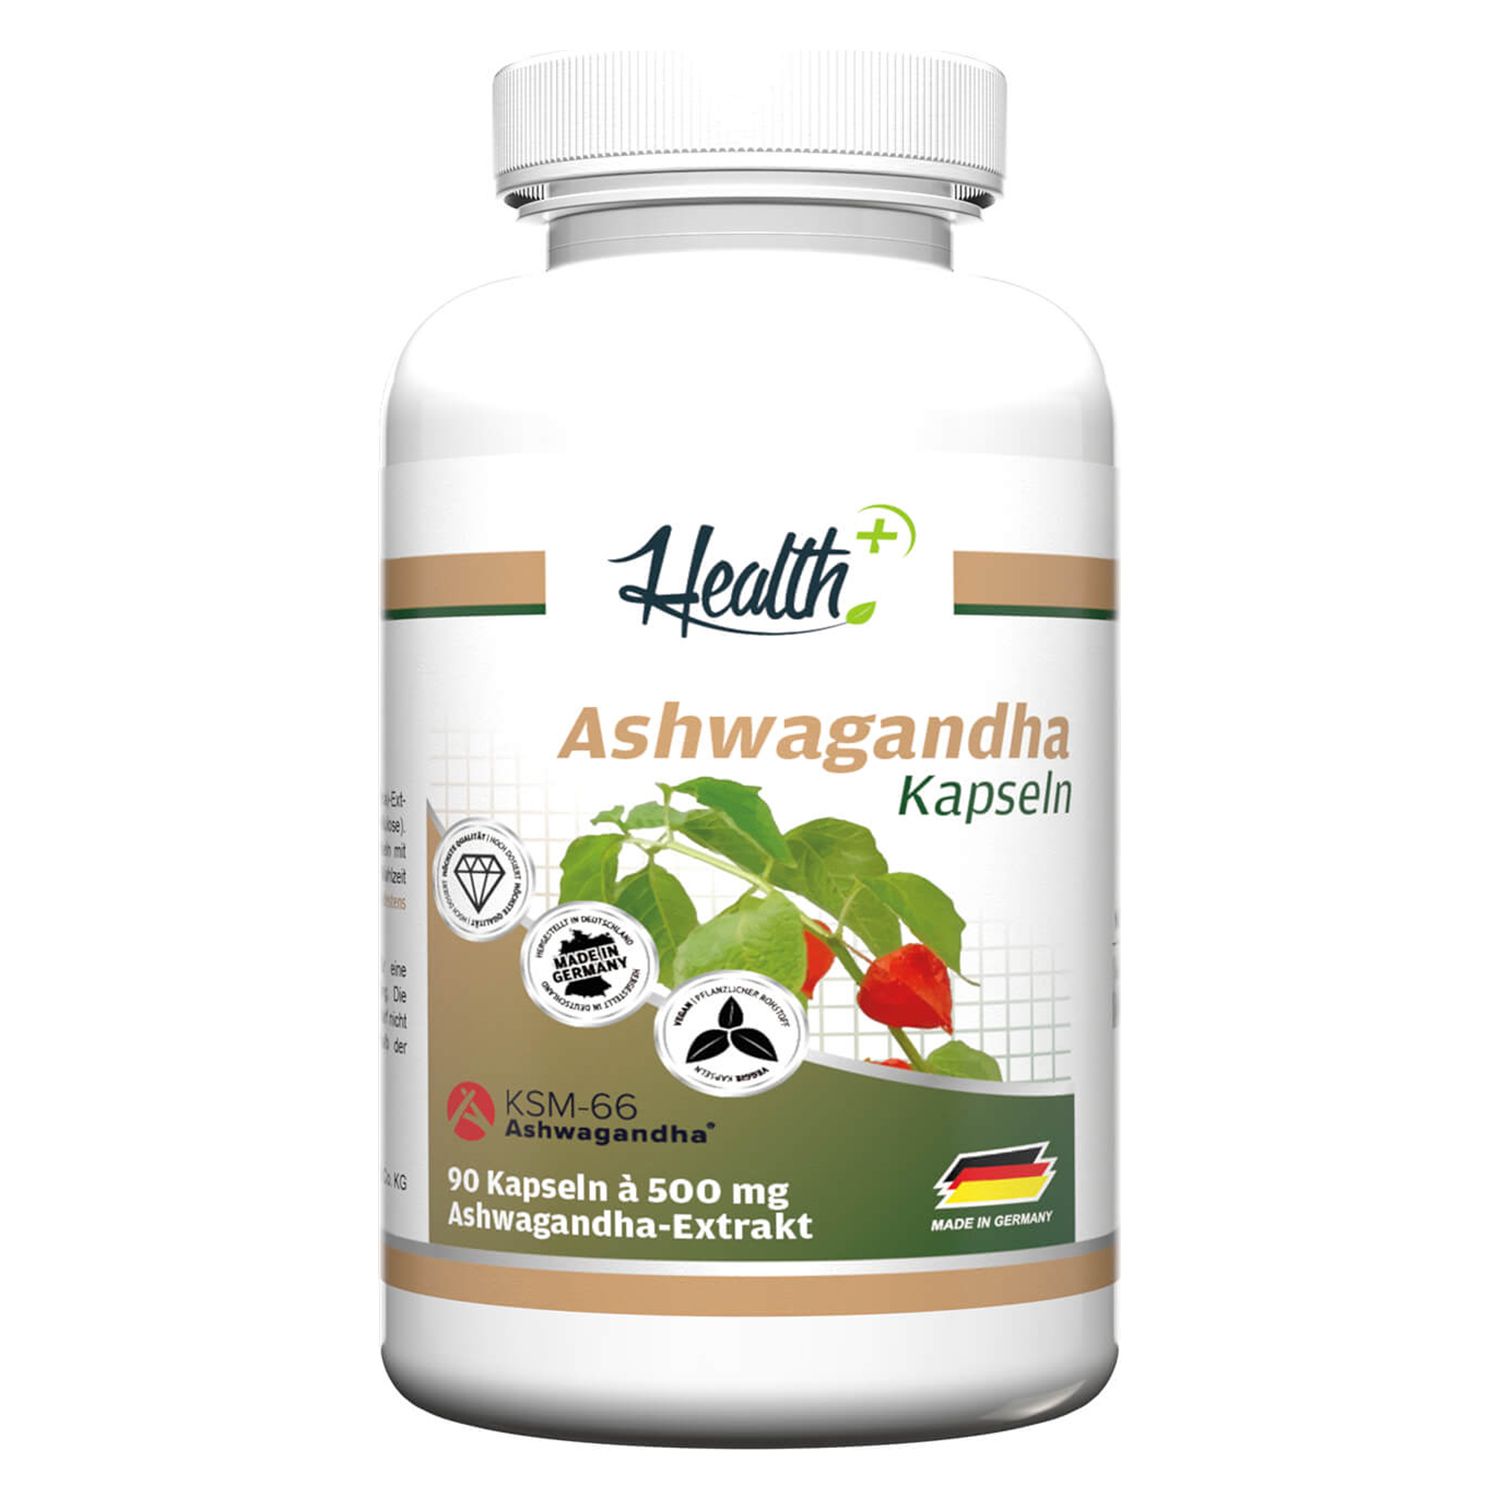 Health+ Ashwagandha mit Ksm-66